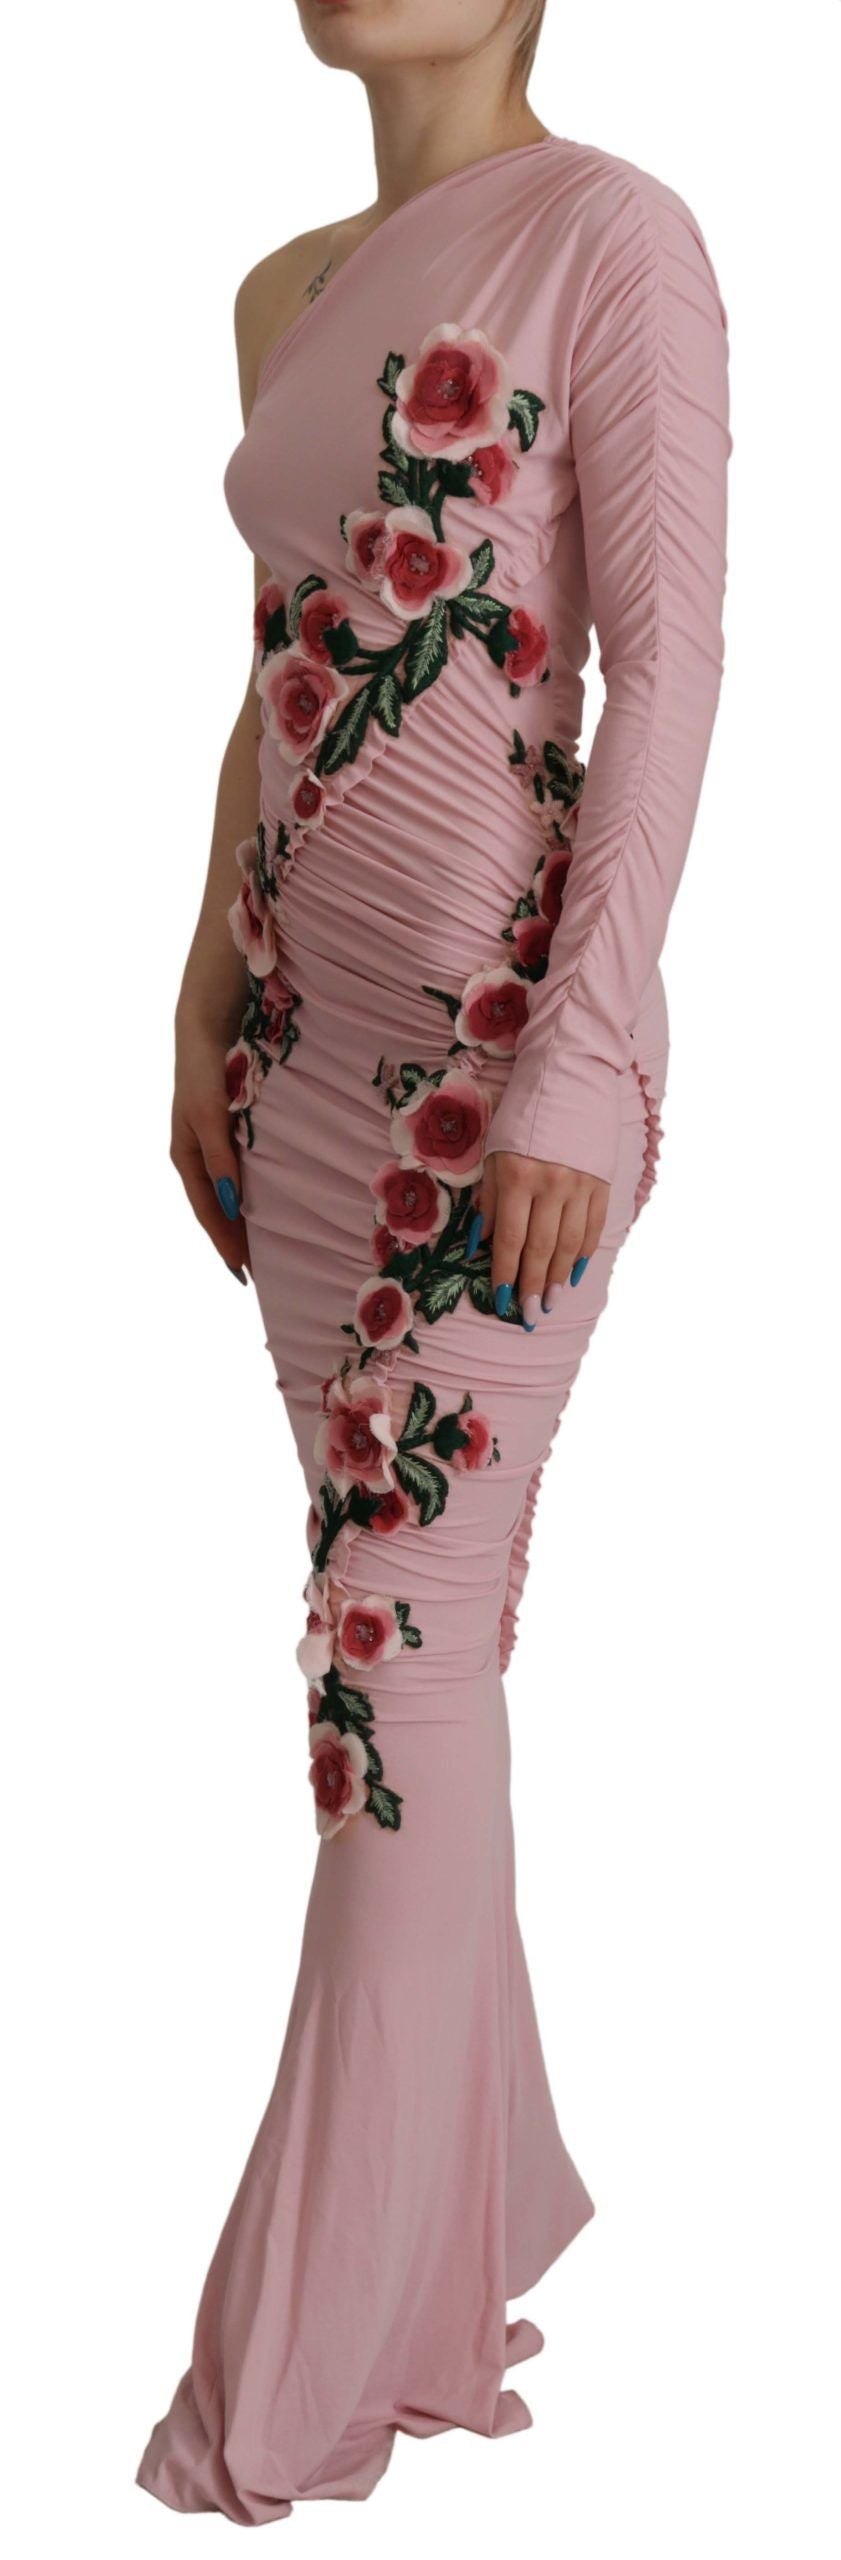 Dolce & Gabbana Pink Flower Embellished One Shoulder Dress